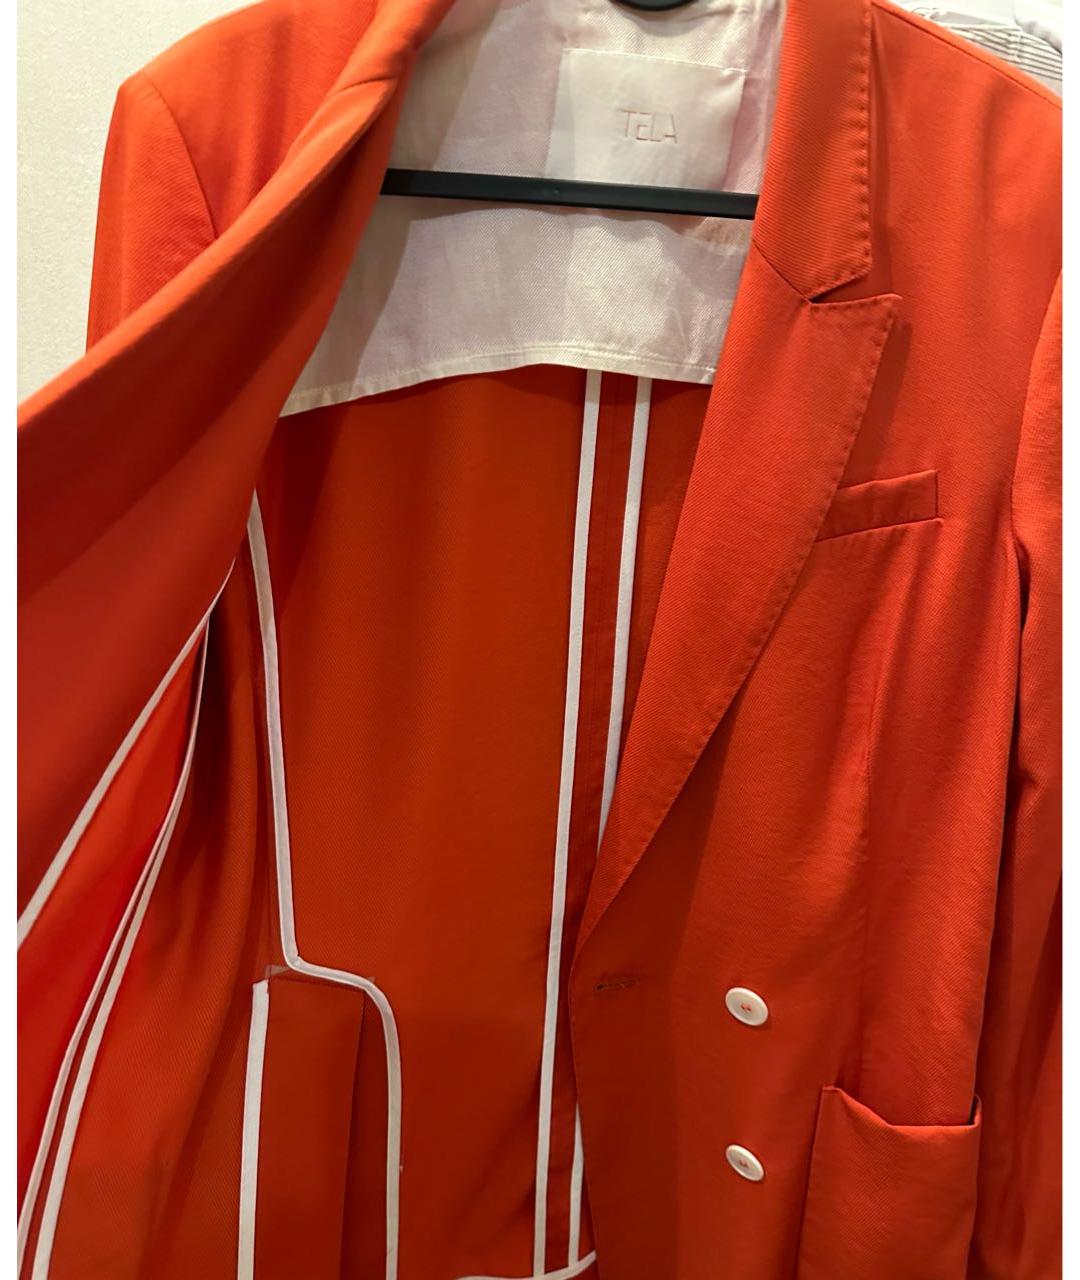 TELA Оранжевый вискозный жакет/пиджак, фото 3